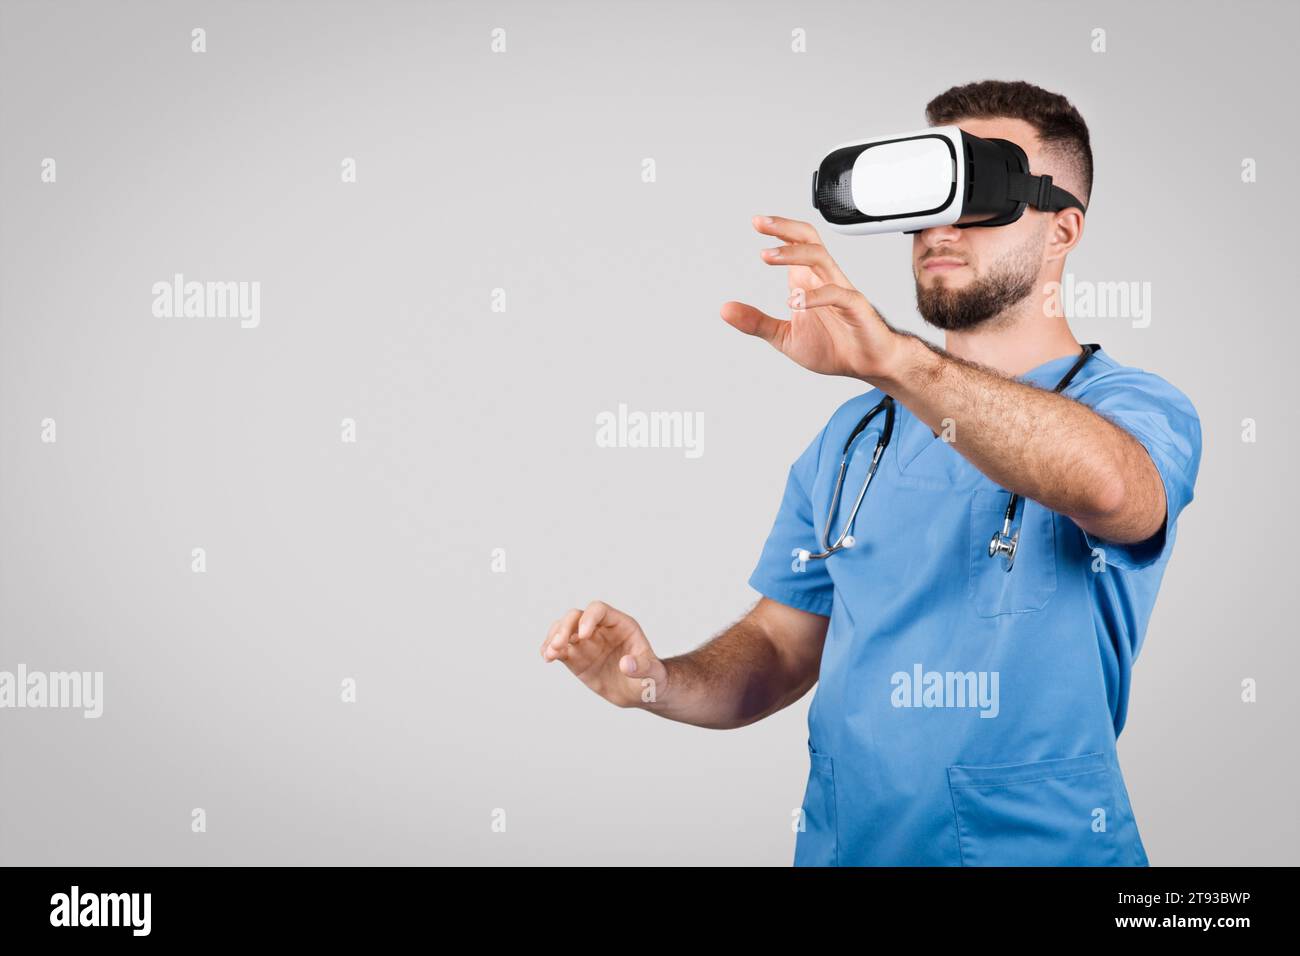 Männlicher Arzt in Blau mit VR-Brille Gesten, grauer Hintergrund, freier Platz Stockfoto